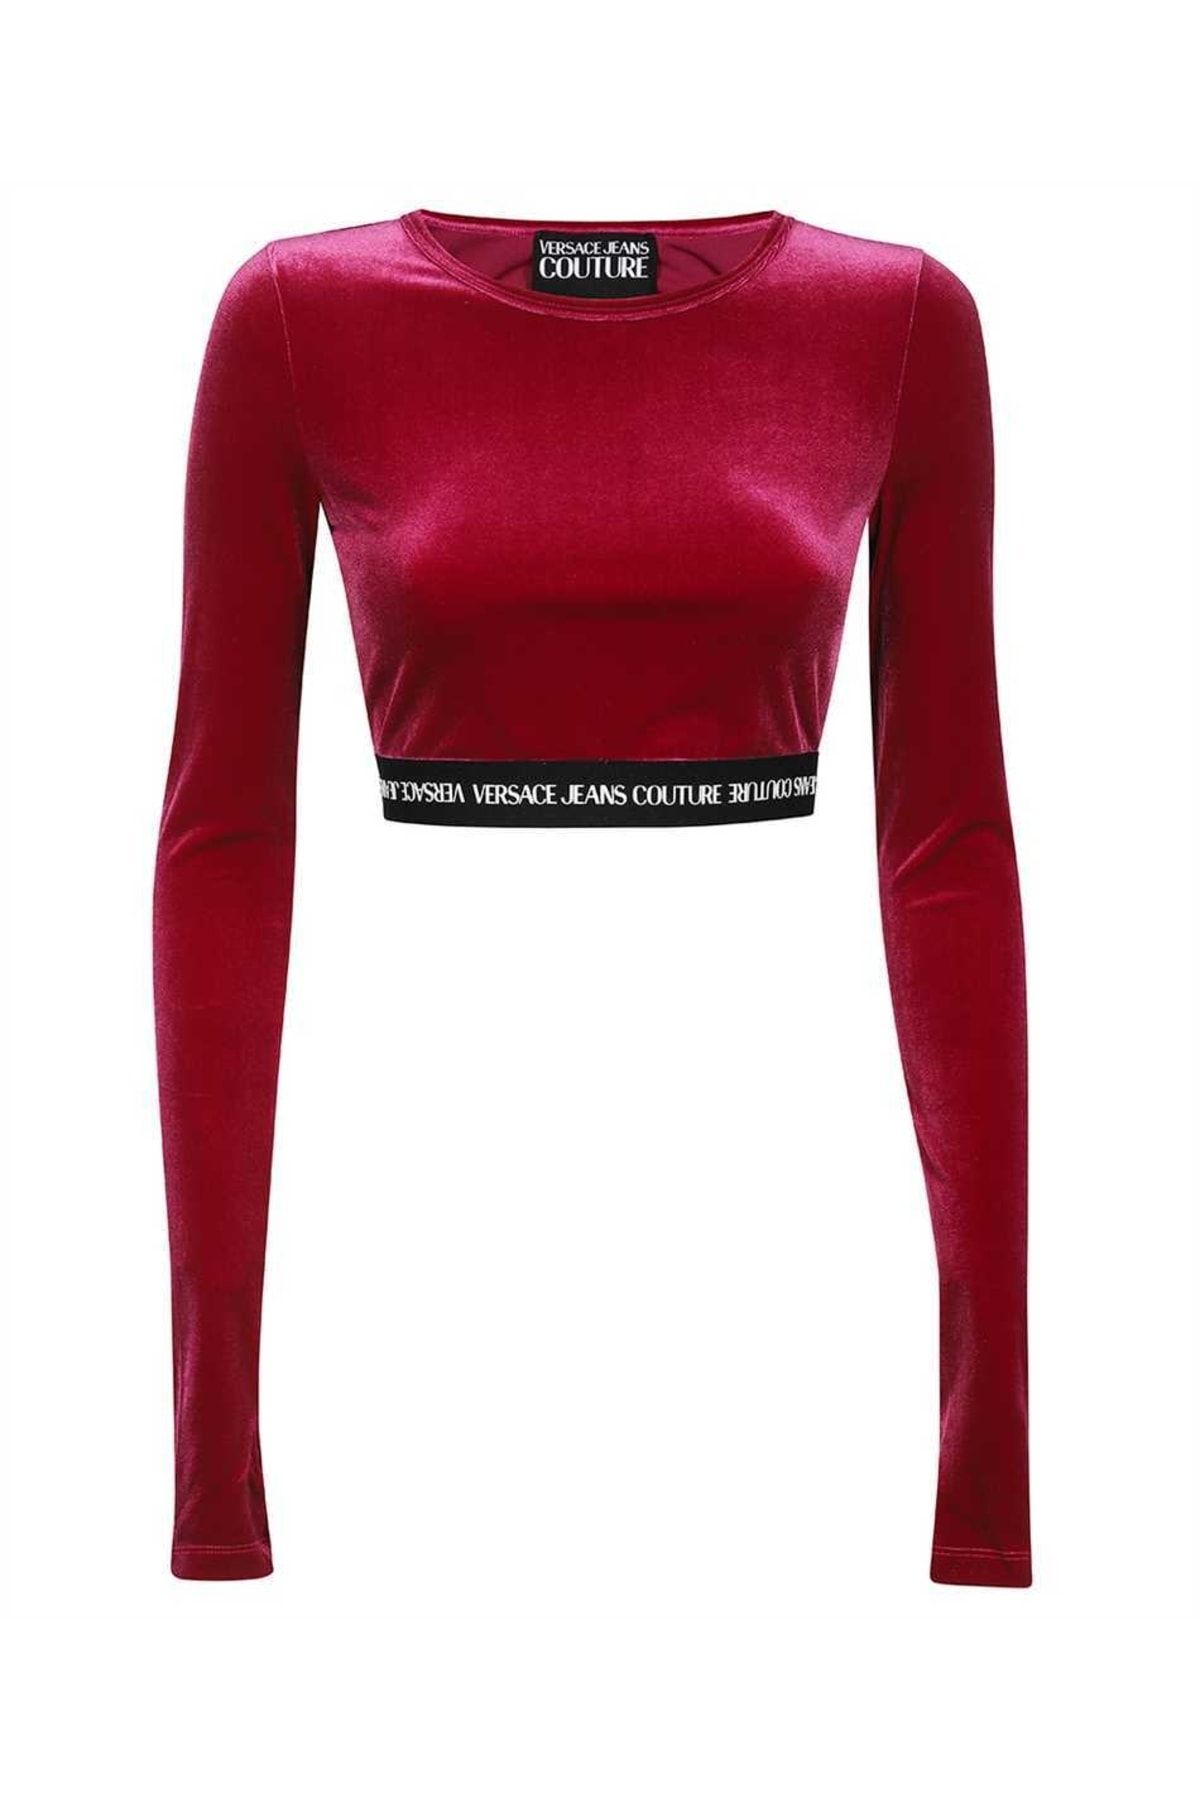 Versace Kadın Düz Crop Kadife Uzun Kollu Kırmızı T-shirt 73hah218 J0008-341